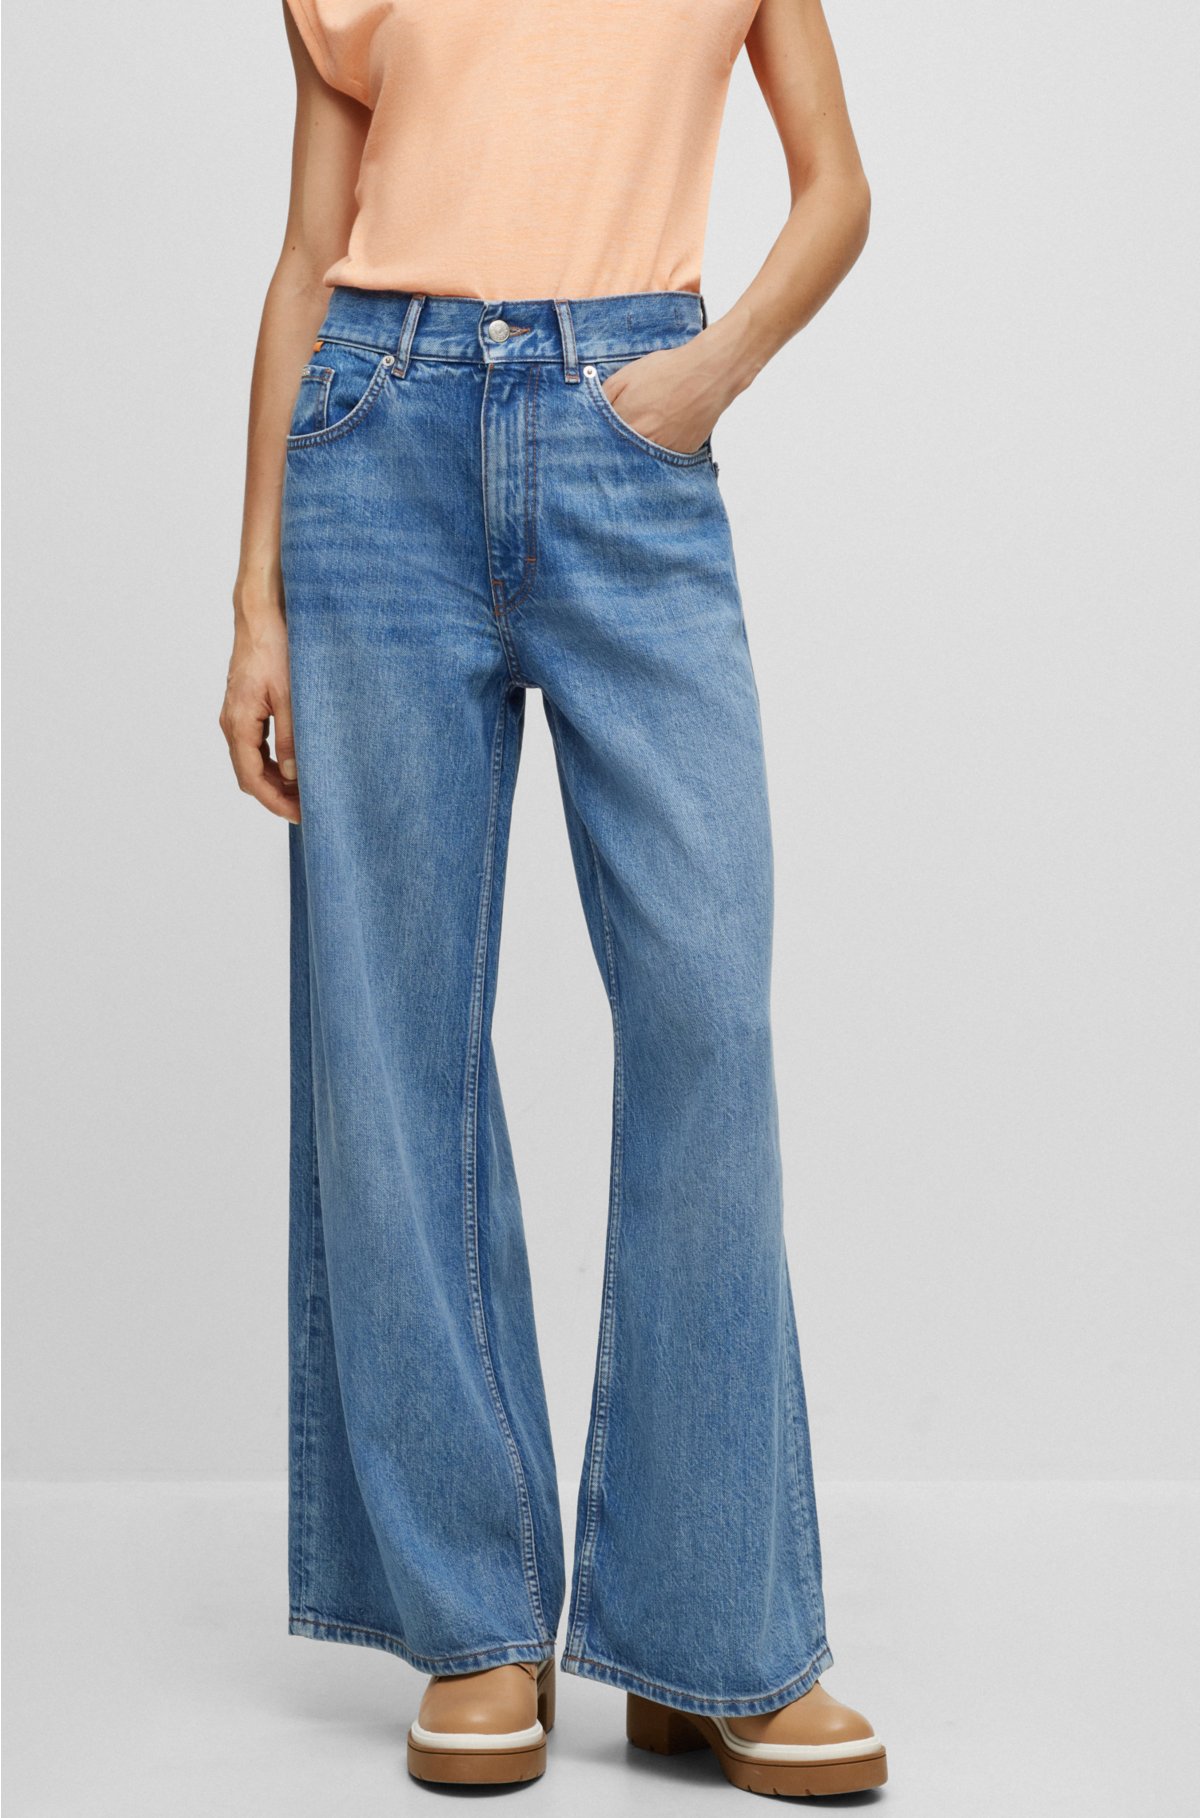 Verslaafde genie Reproduceren BOSS - Jeans van blauw denim met hoge taille en wijde pijpen